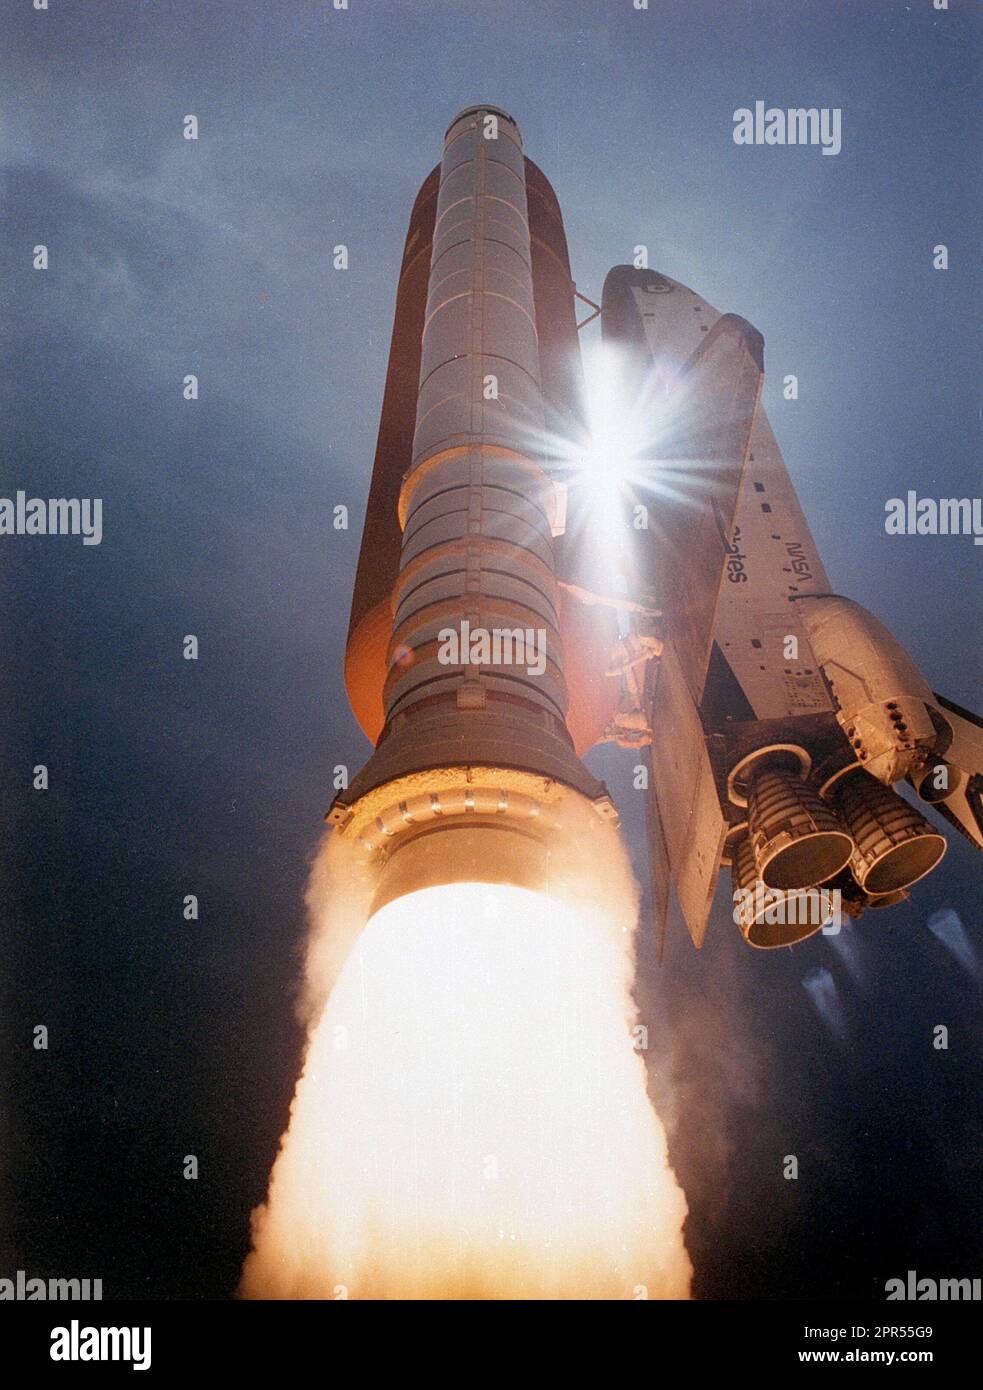 Das Space Shuttle Atlantis streifelt nach oben, während Sonnenlicht durch die Lücke zwischen Orbiter und ET-Baugruppe dringt. Atlantis hob am 2. August 1991 um 11:02 Uhr EDT auf dem 42. Space Shuttle Flug ab und trug eine fünfköpfige Crew und TDRS-E. Eine Remote-Kamera auf 275 Fuß Höhe der festen Oberflächenstruktur nahm dieses Bild auf. Stockfoto